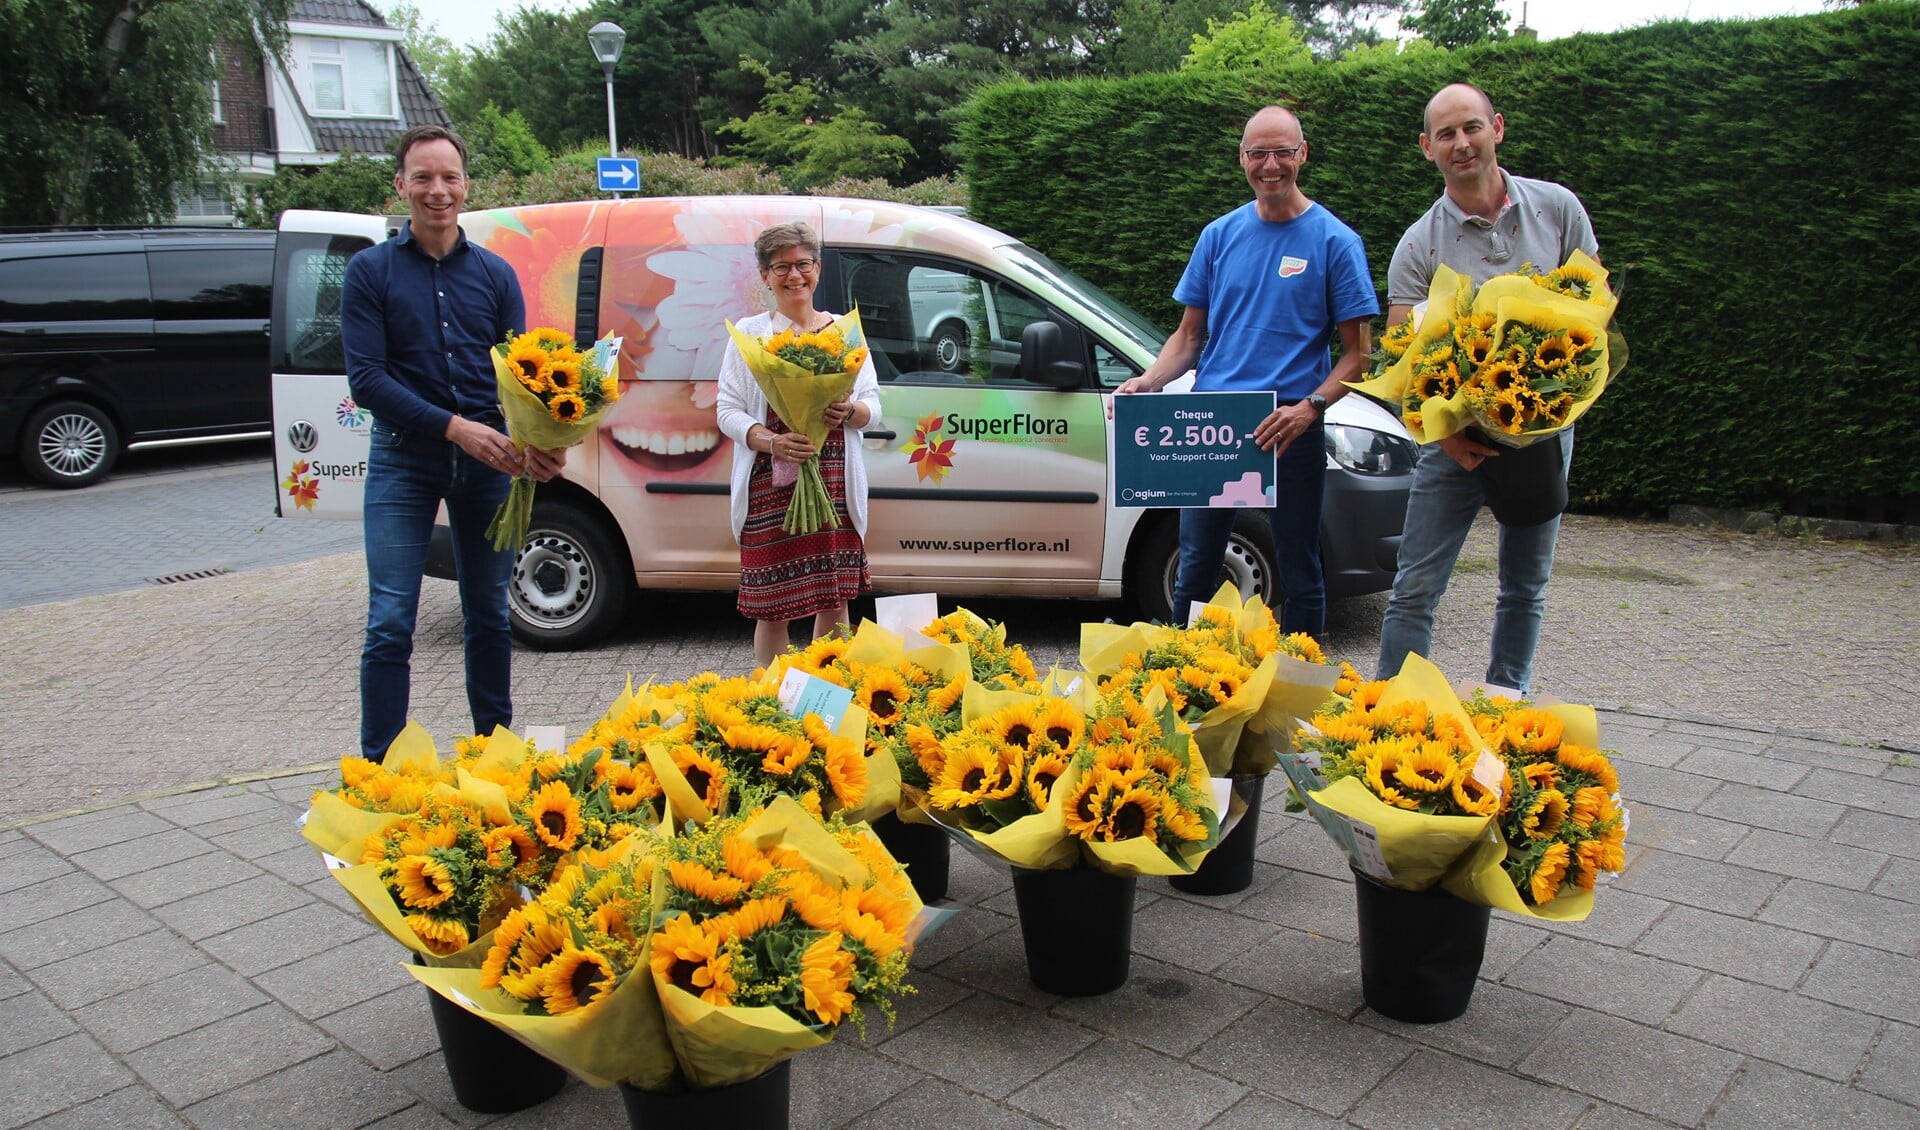 Robbert van Adrichem, Monique Segijn, Stephan Persoon en Ard van Paassen met de prachtige boeketten (zonne)bloemen.